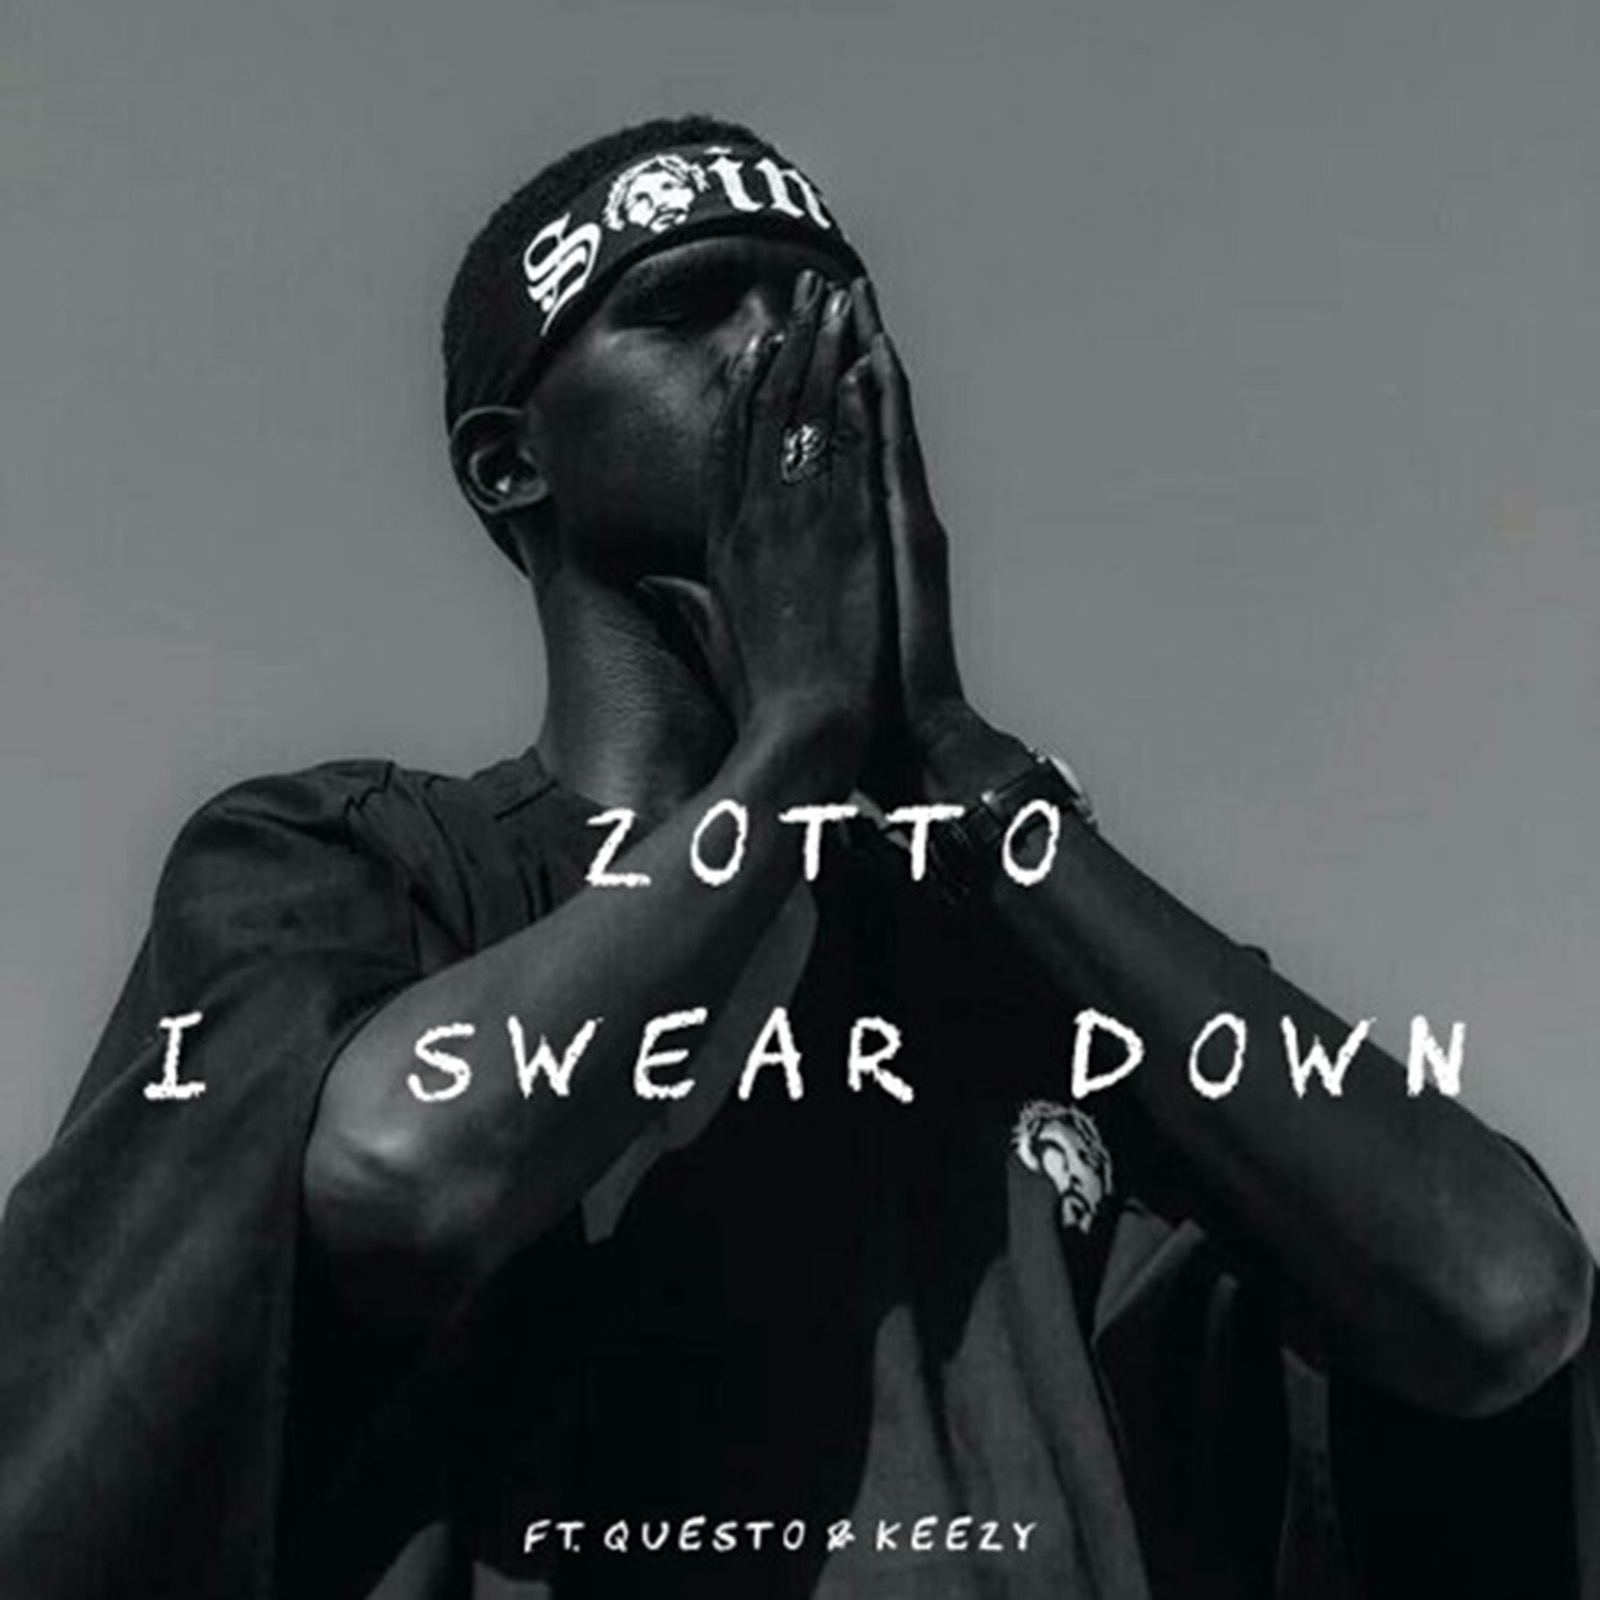 I Swear Down by Zotto